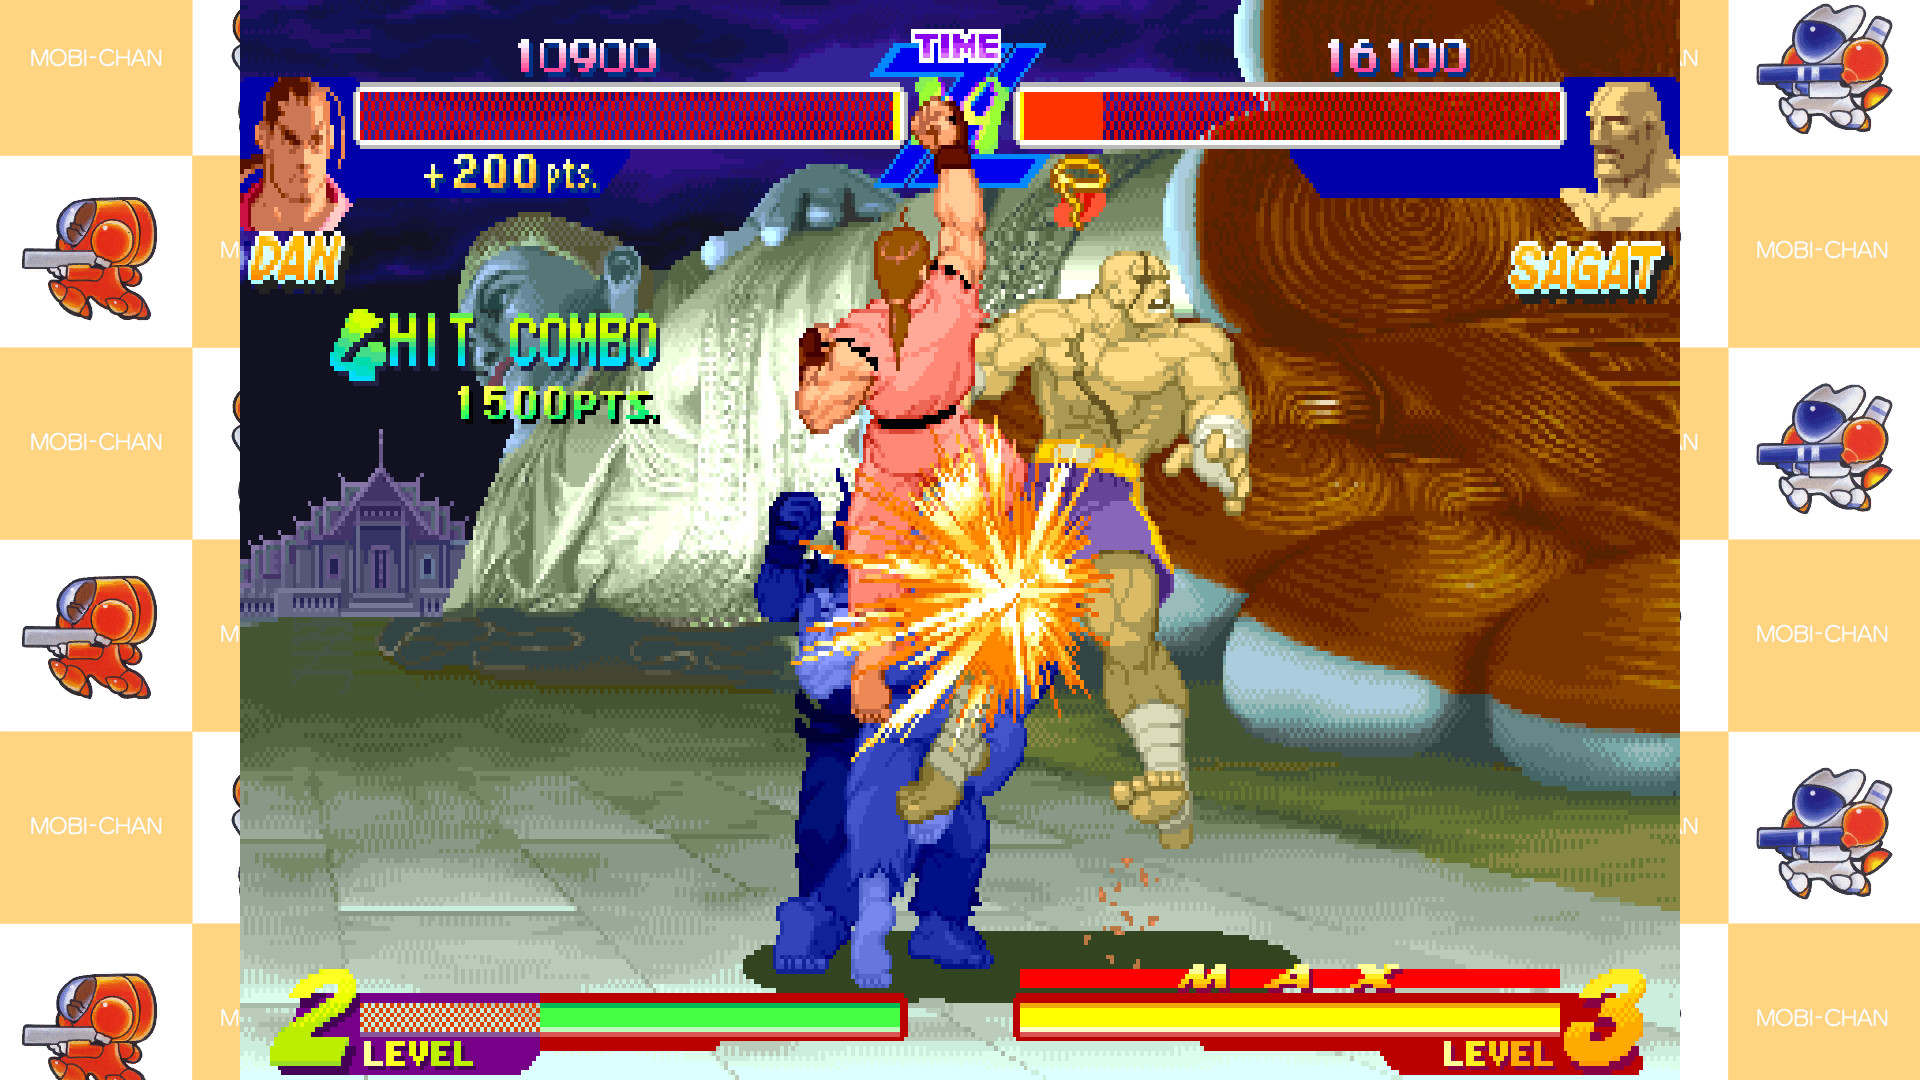 Jogue Street Fighter Alpha: Warriors Dreams, um jogo de Street fighter